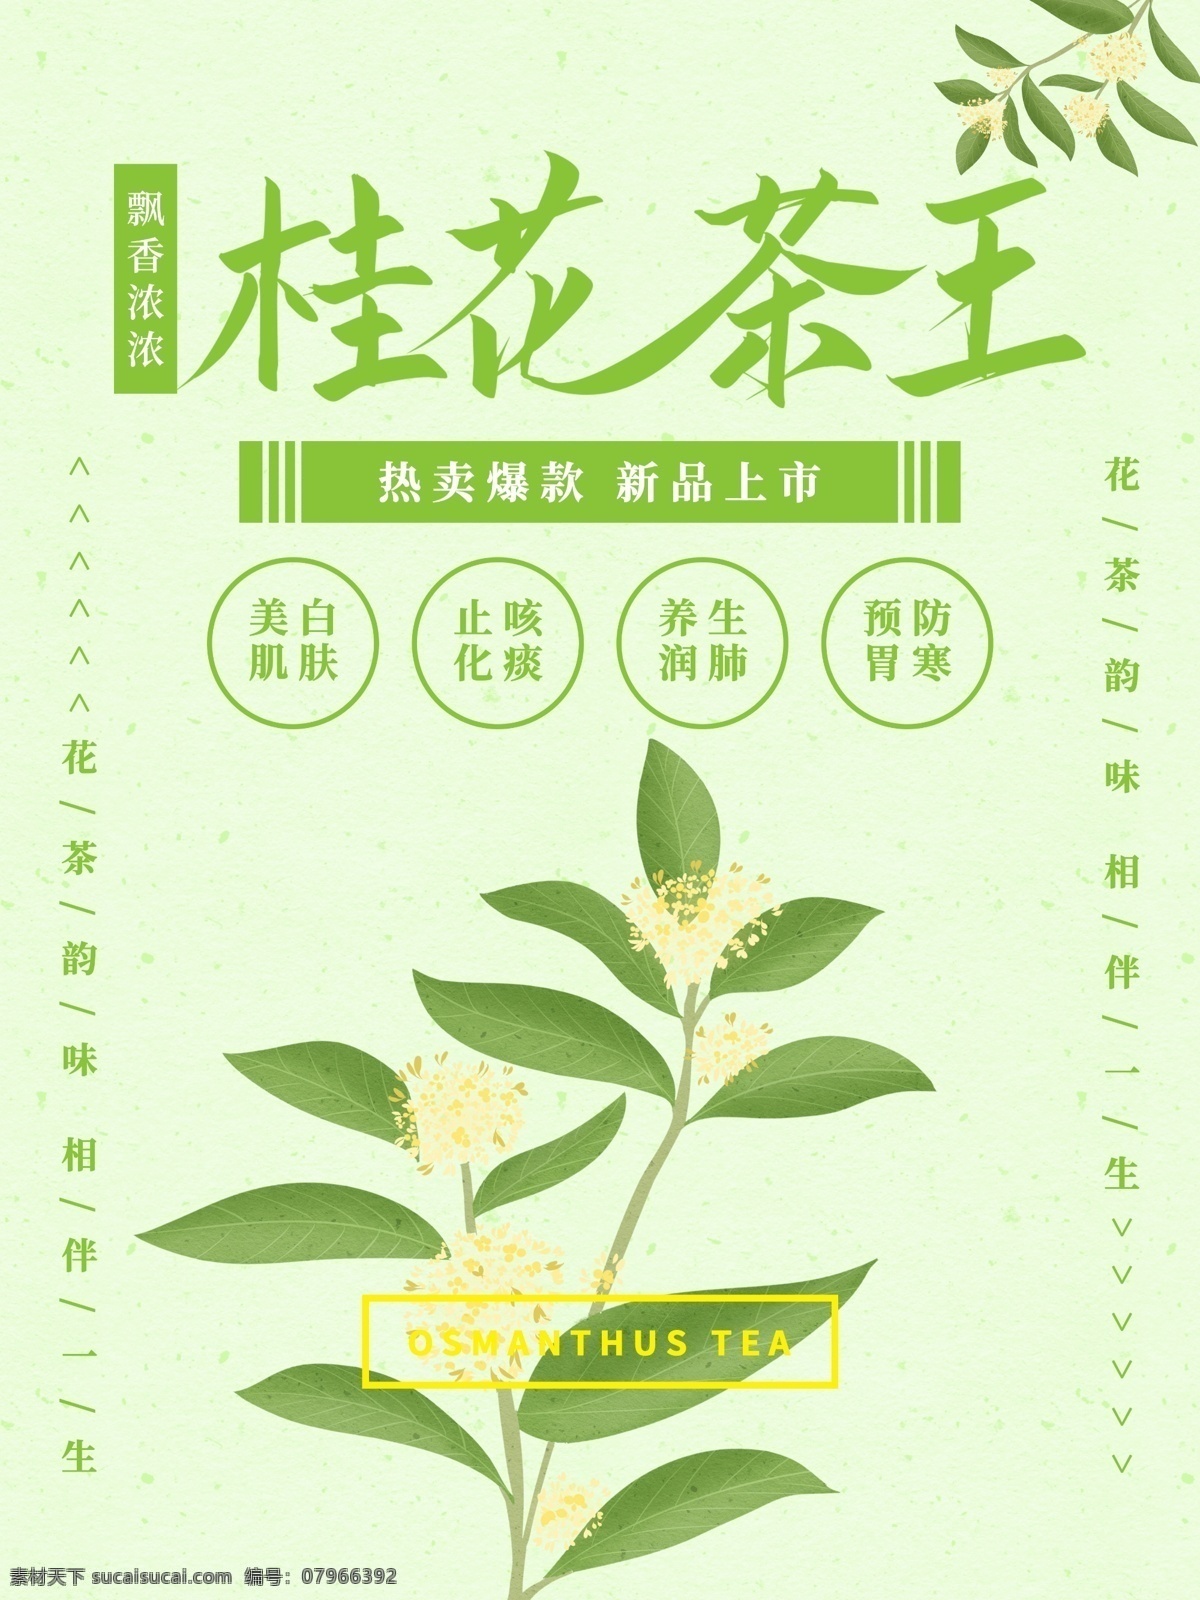 茶叶海报 茶叶 茶道素材 茶文化 茶海报 绿茶素材 茶叶背景 茶叶素材 树叶 分层